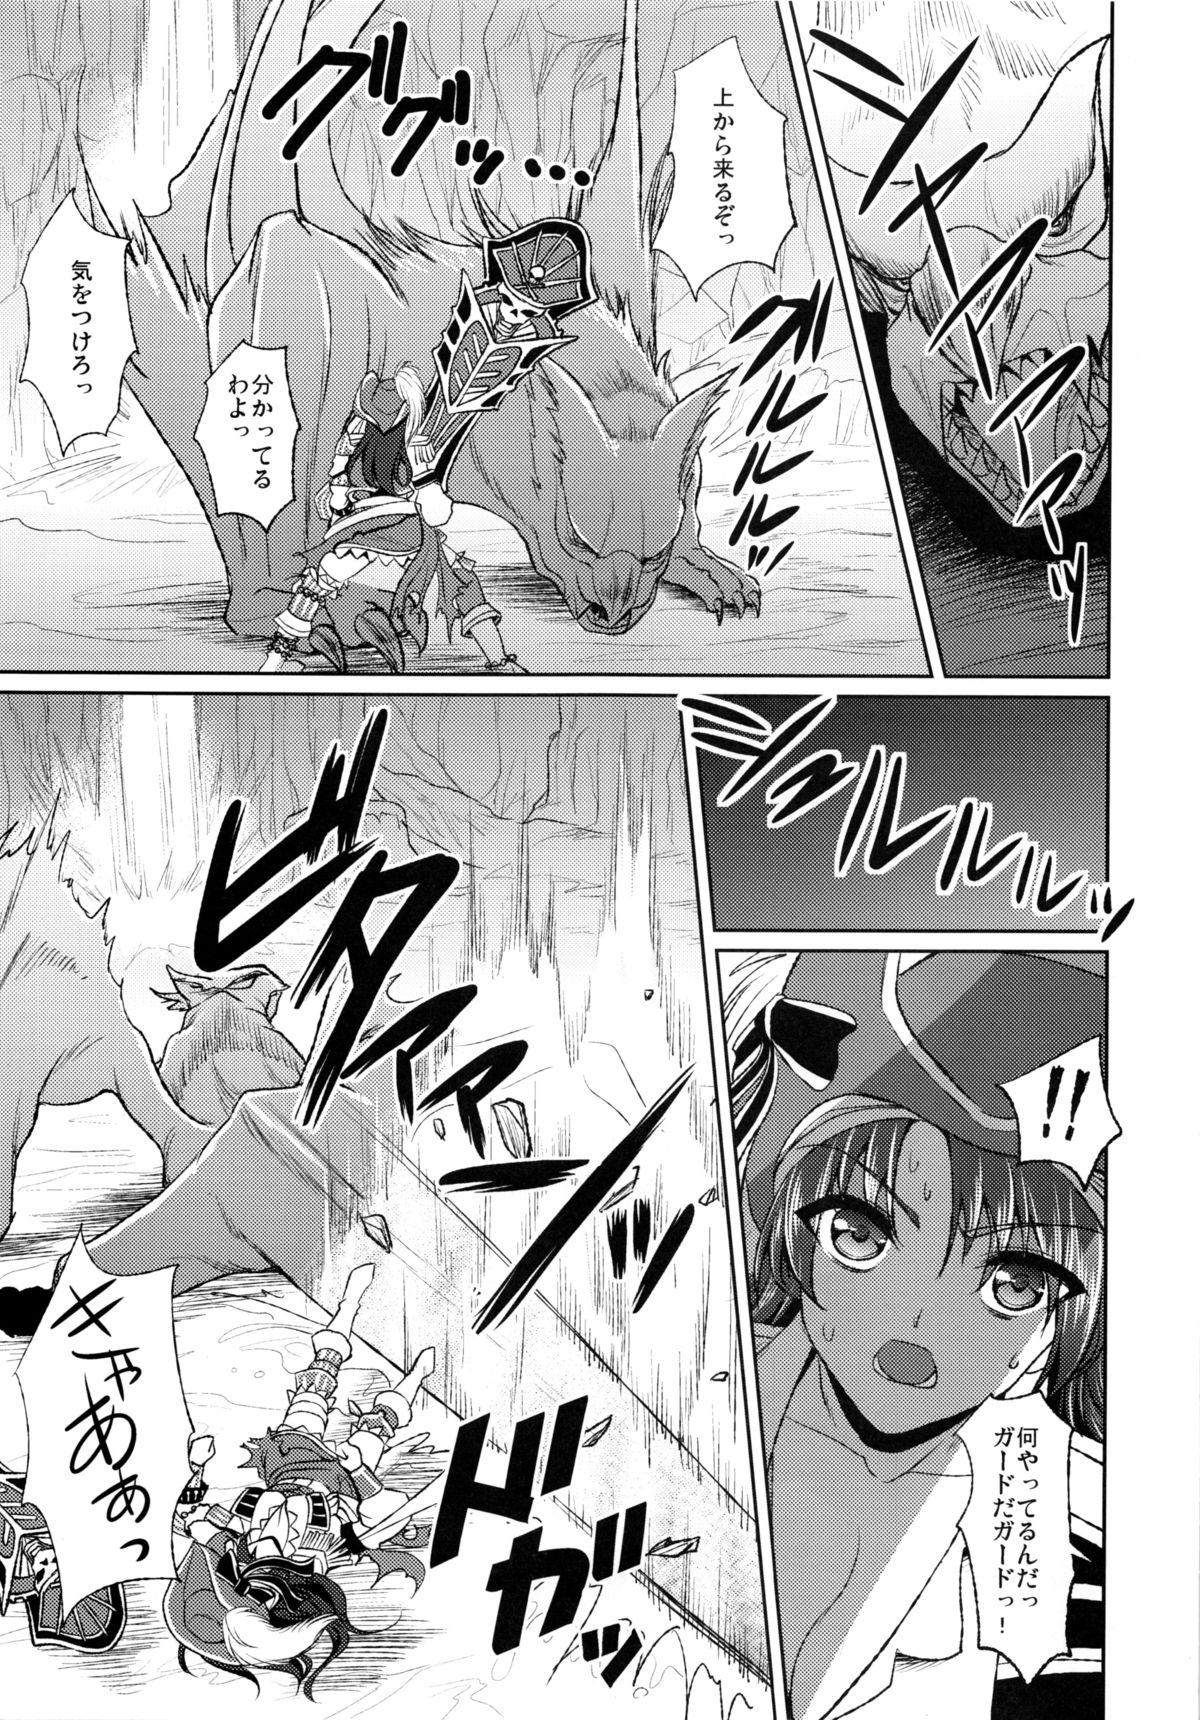 Rola Kaizoku Musume no Gosan - Monster hunter Siririca - Page 2